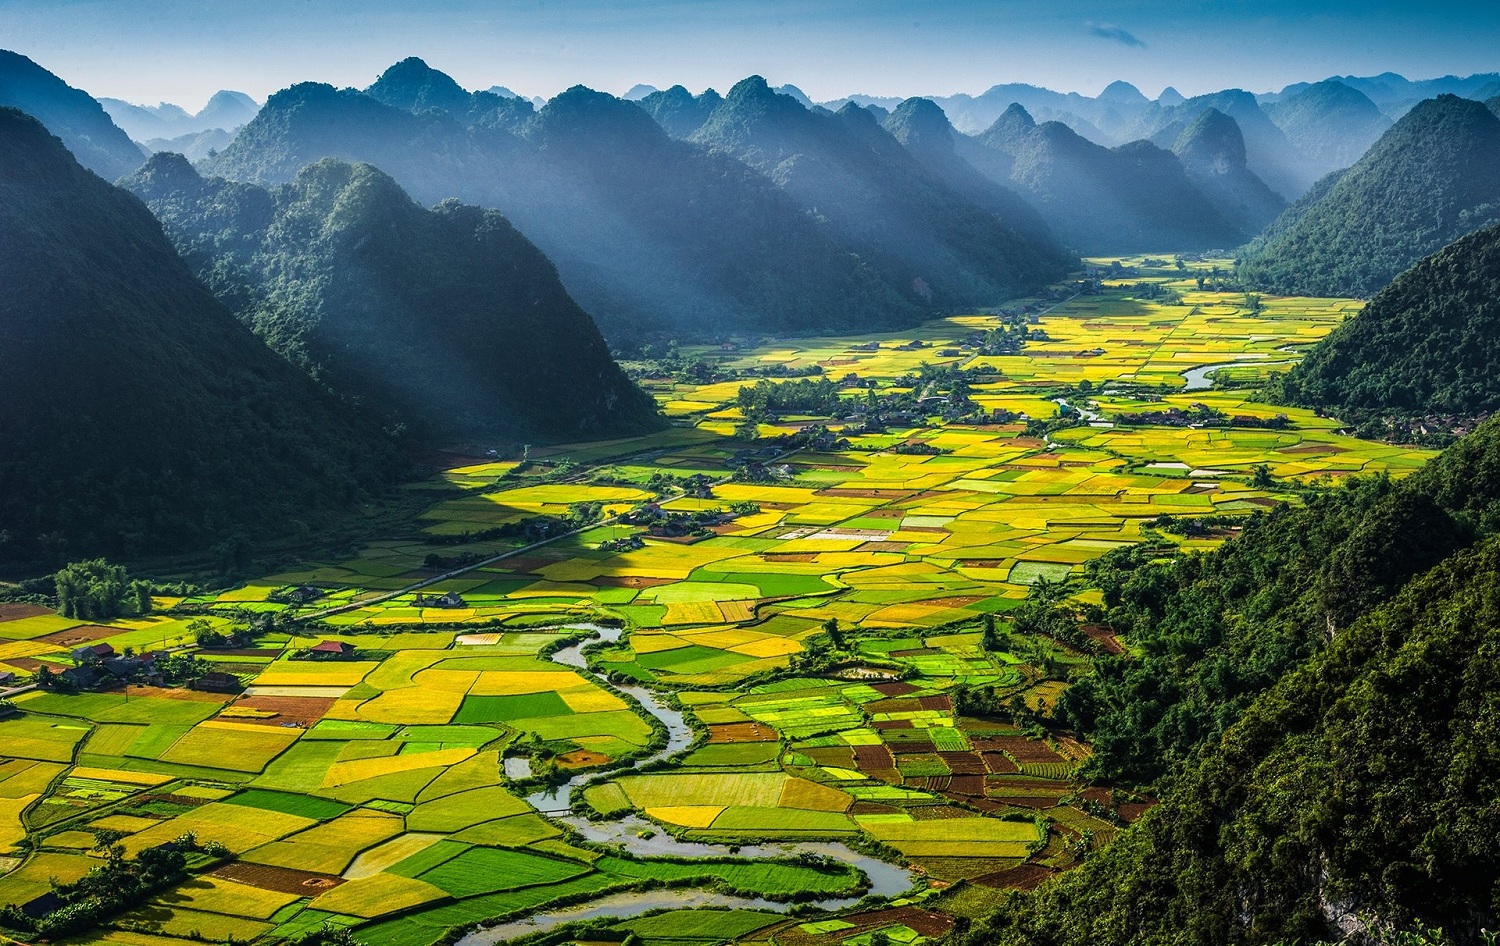 Thiên nhiên Việt Nam là kho tàng vô giá của đất nước, với những thắng cảnh đẹp đến từng centimet. Hãy xem hình ảnh để chiêm ngưỡng vẻ đẹp hùng vỹ của dãy núi, sông suối và rừng xanh tươi của Thiên nhiên Việt Nam.